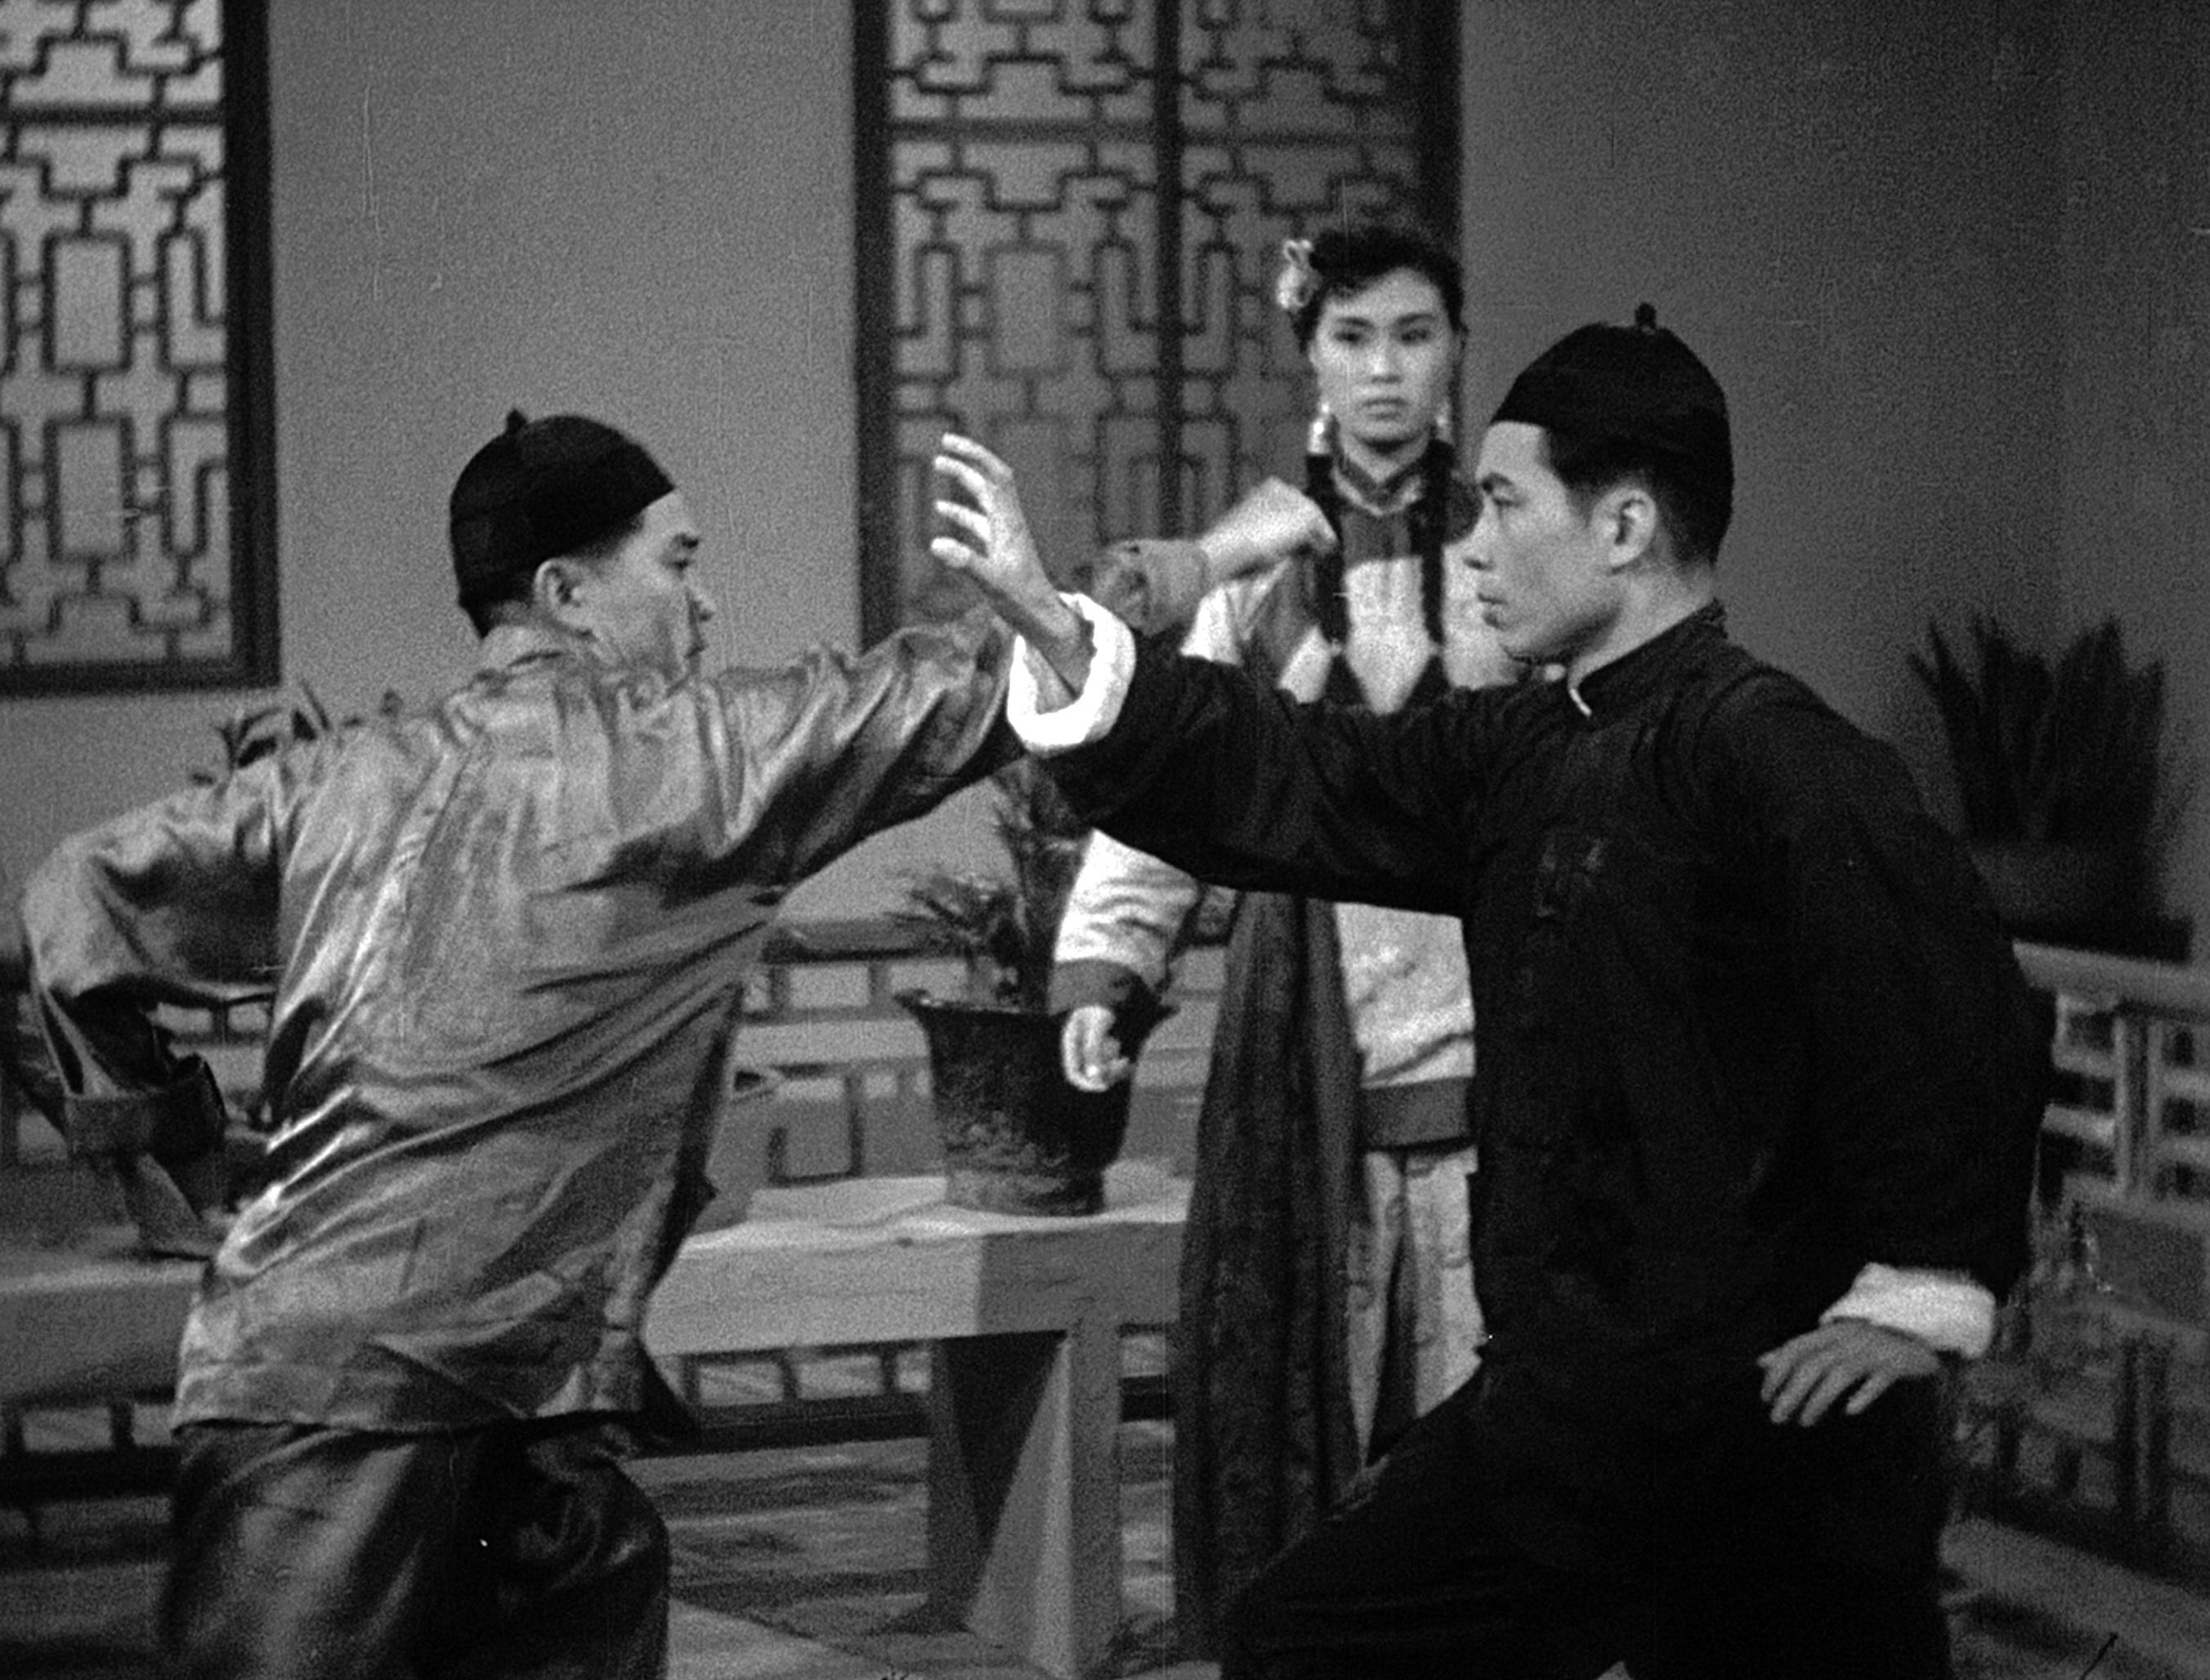 康樂及文化事務署香港電影資料館的「瑰寶情尋」系列在十二月至明年五月以「聲影『留』傳II」為題隆重登場，期間每月的首個星期日將放映兩套主題相近但在不同年代製作的電影，讓觀眾透過電影跨越時空，見證不同年代電影人的感悟和省思。圖示《獅王梁寬肉搏猛虎坑》（1958）劇照。